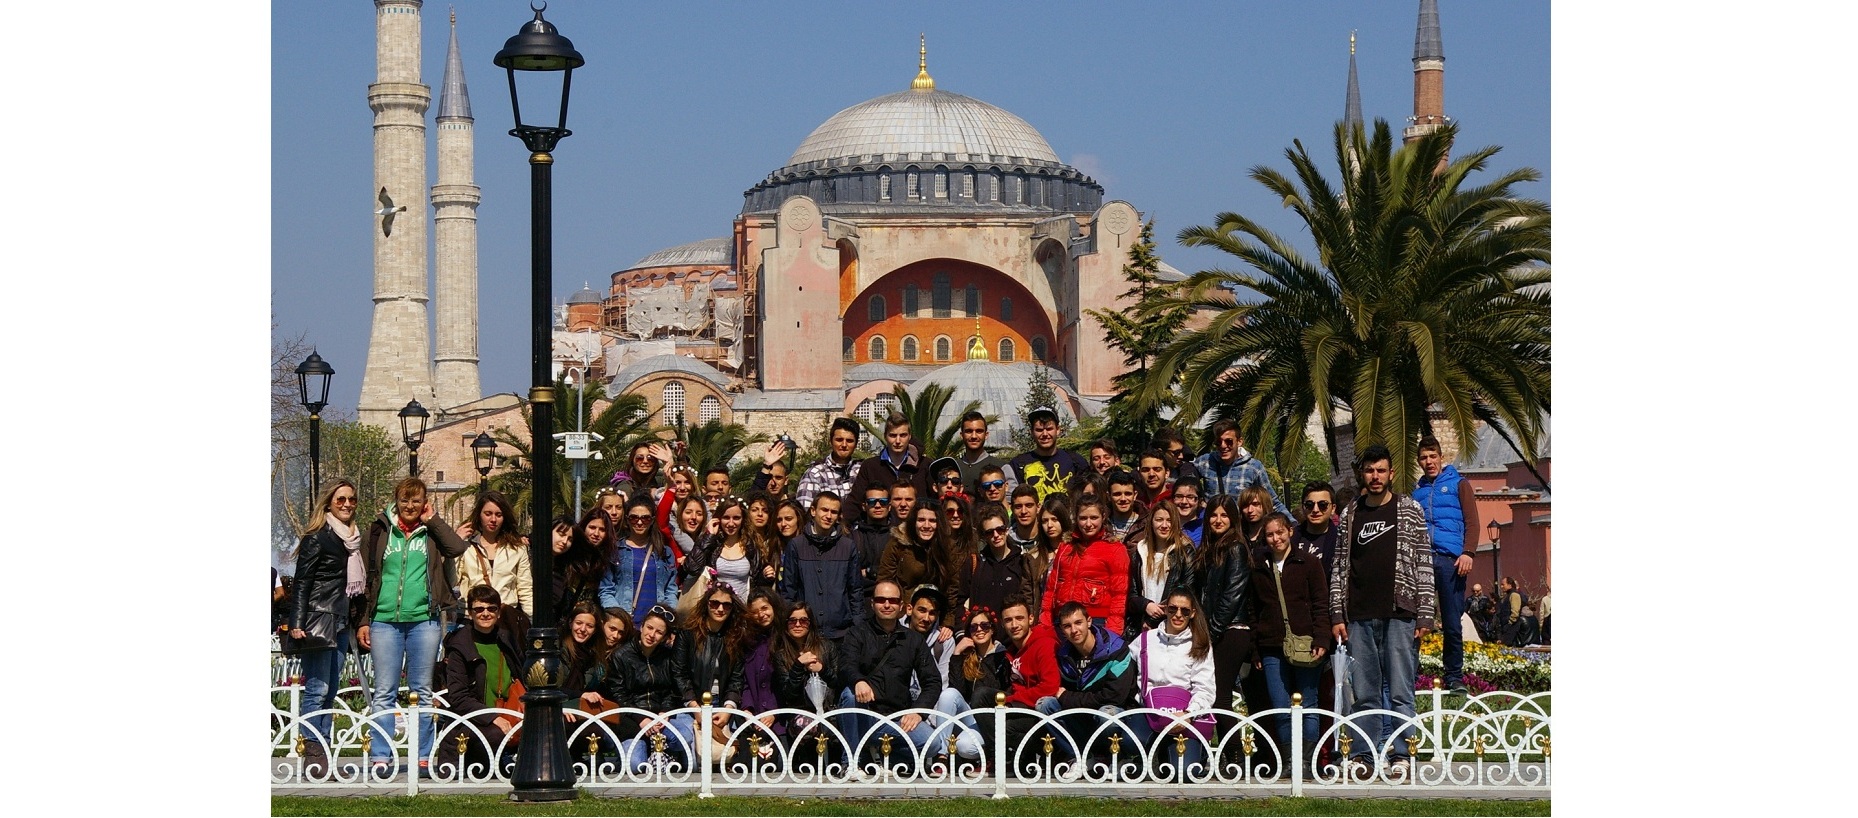 Β Λυκείου - Εκδρομή στην ΚωνσταντινούποληΗ Τάξη της Β Λυκείου πραγματοποίησε 4ήμερη εκδρομή στην Κωνσταντινούπολη απο 27-3-2014 εώς 30-3-2014.Διαβάστε περισσότερα